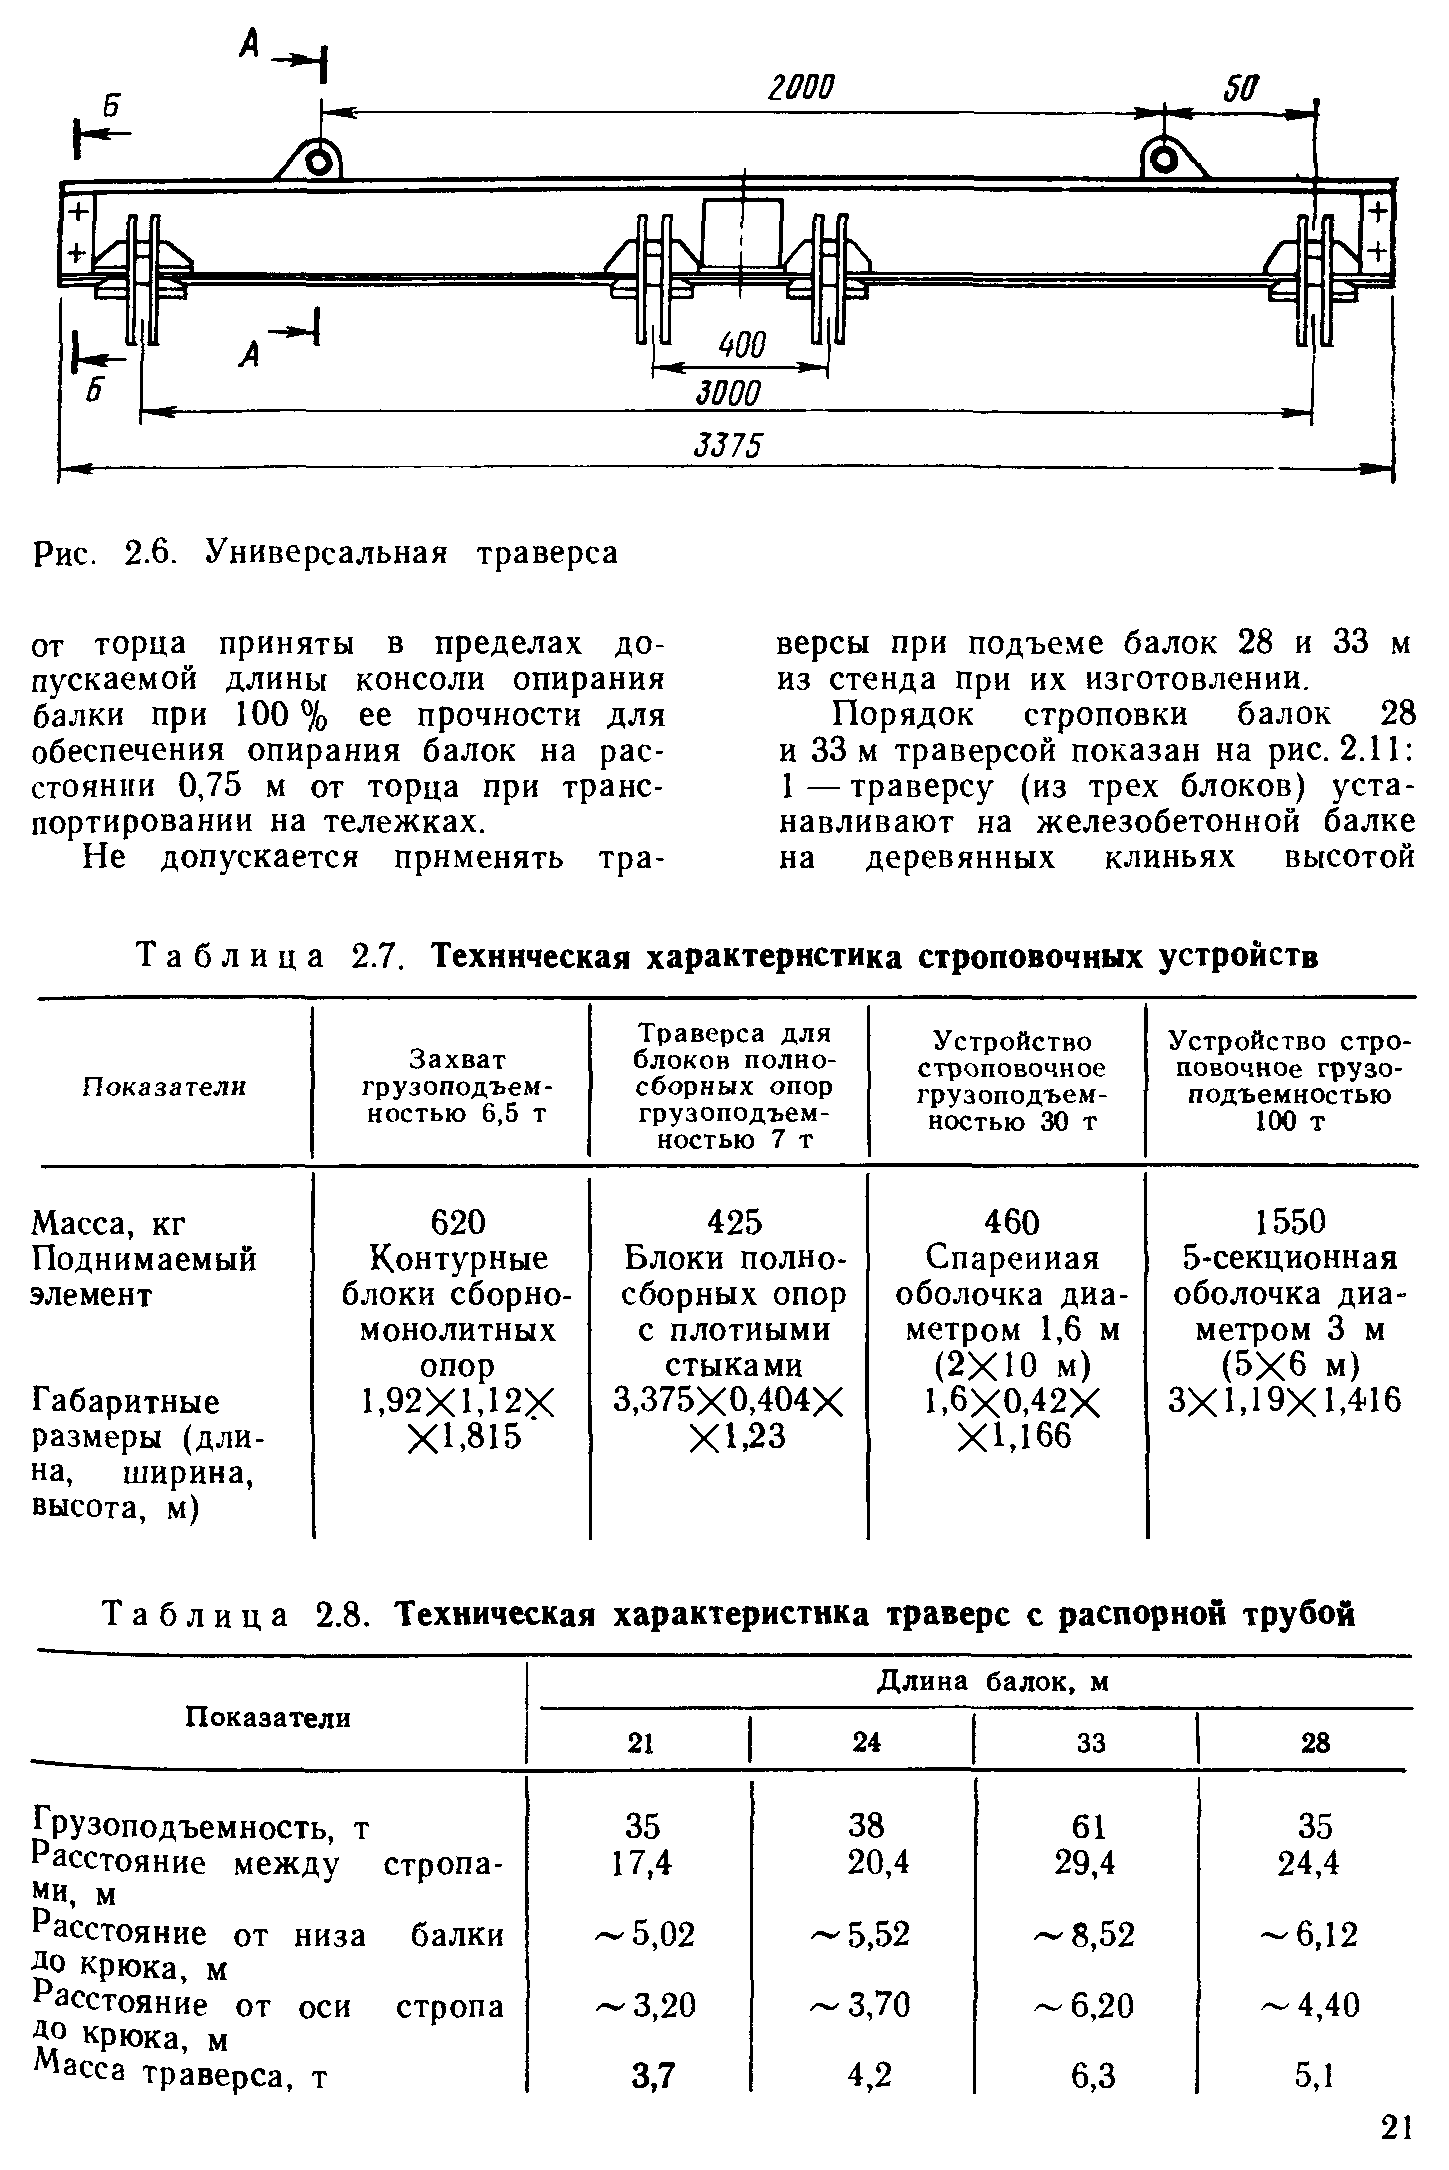 Таблица 2.8. Техническая характеристика траверс с распорной трубой
